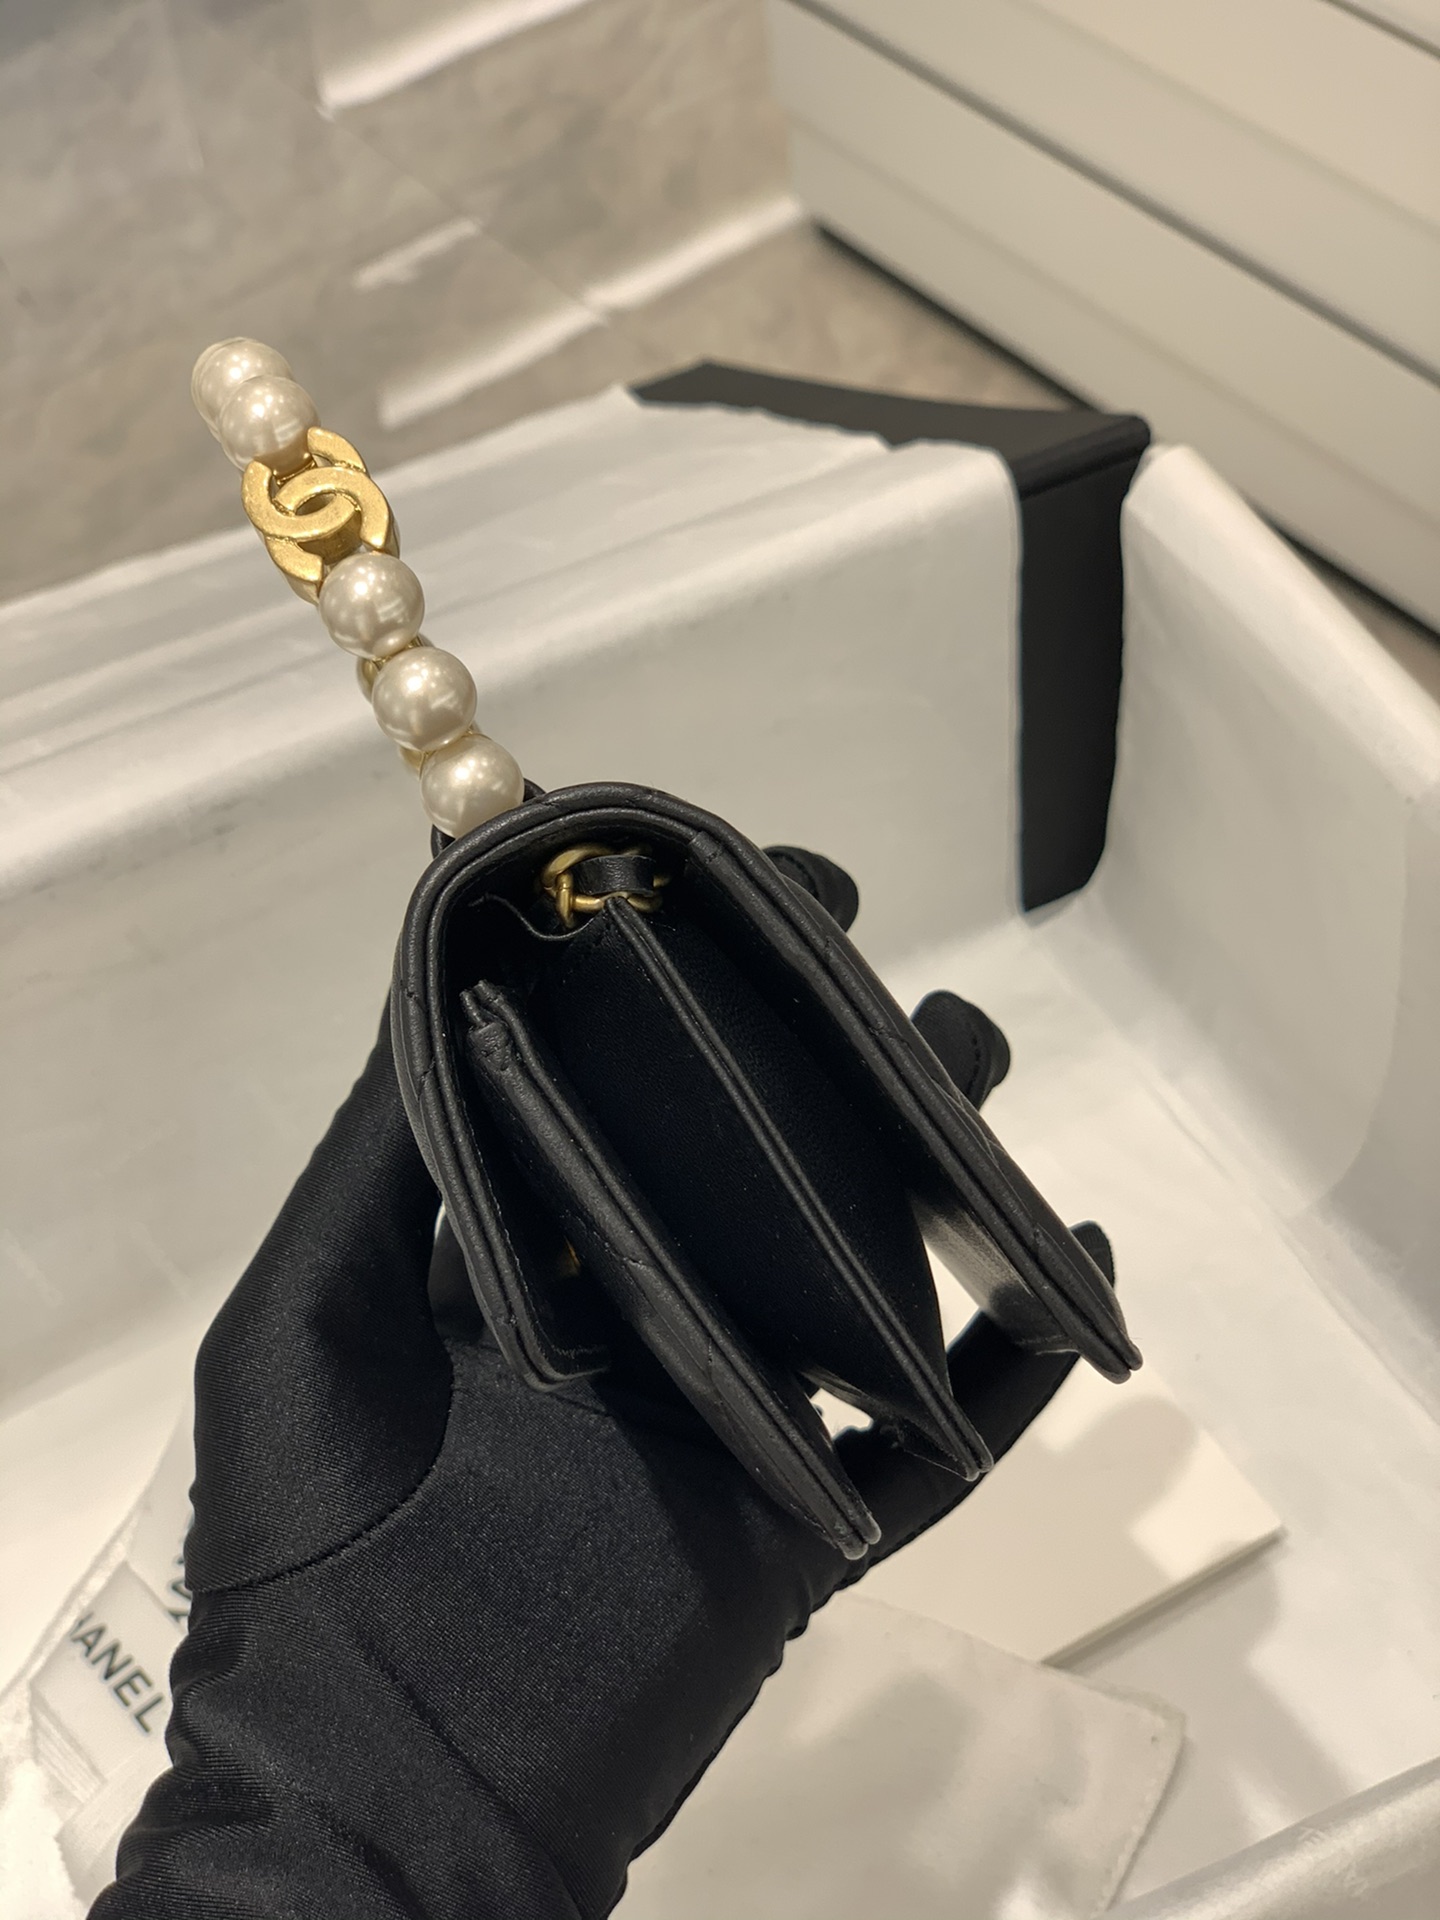 Chanel早秋高级手工坊系列  mini珍珠手柄包/卡包 黑色配珍珠 很有奥黛丽赫本feel 12×8×4cm